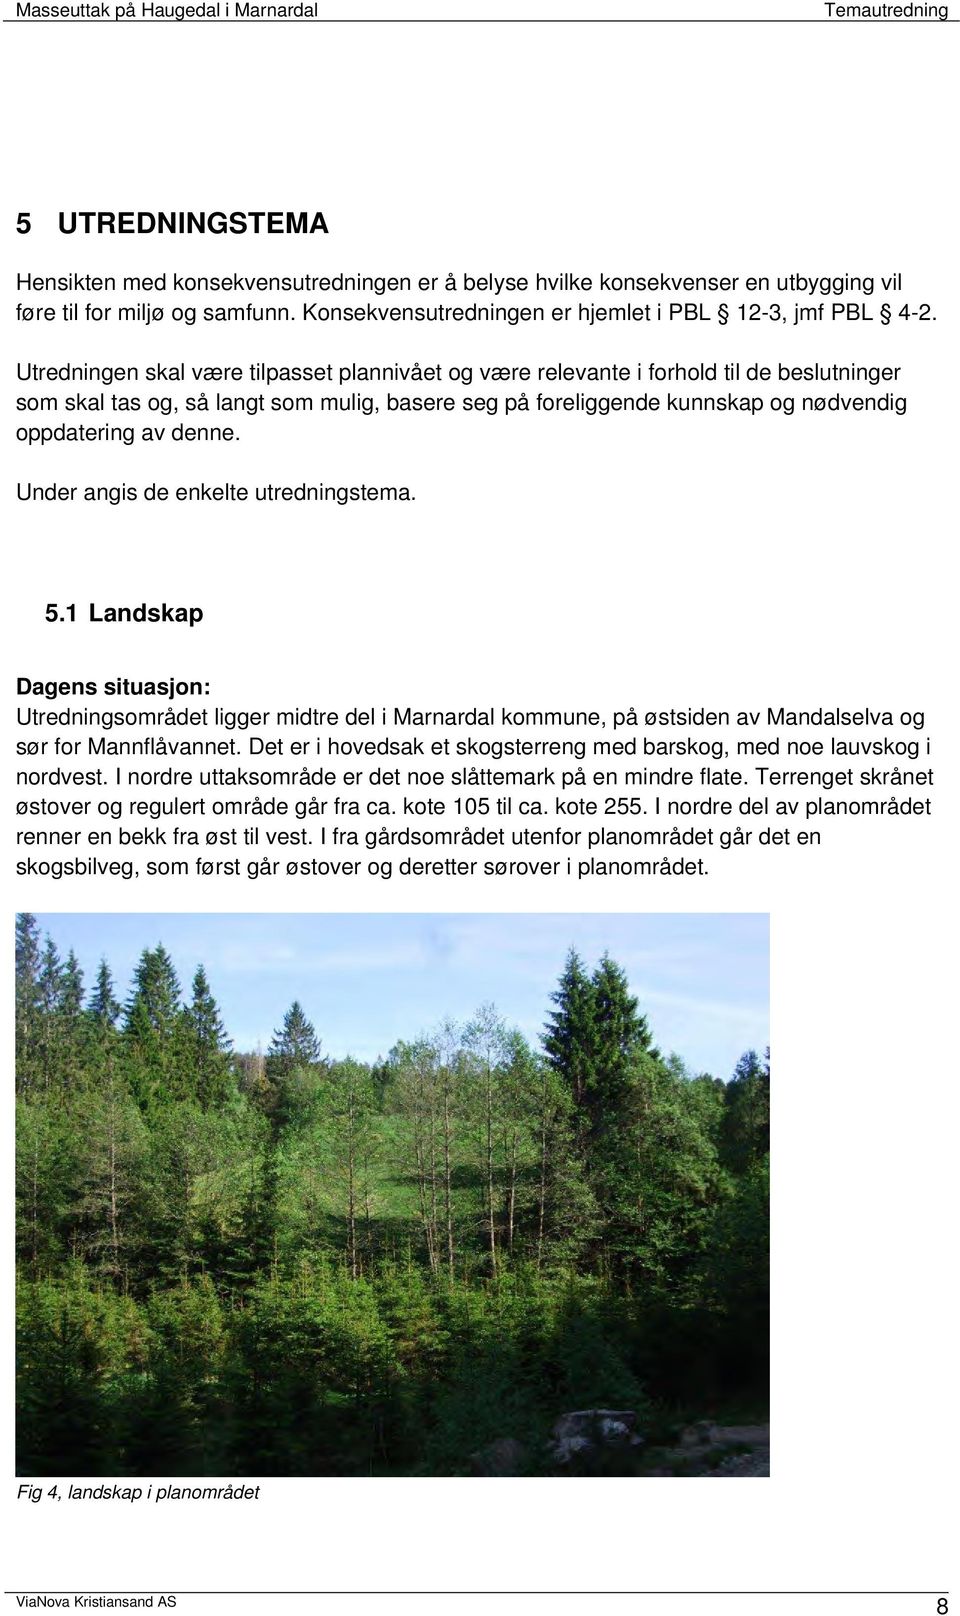 Under angis de enkelte utredningstema. 5.1 Landskap Dagens situasjon: Utredningsområdet ligger midtre del i Marnardal kommune, på østsiden av Mandalselva og sør for Mannflåvannet.